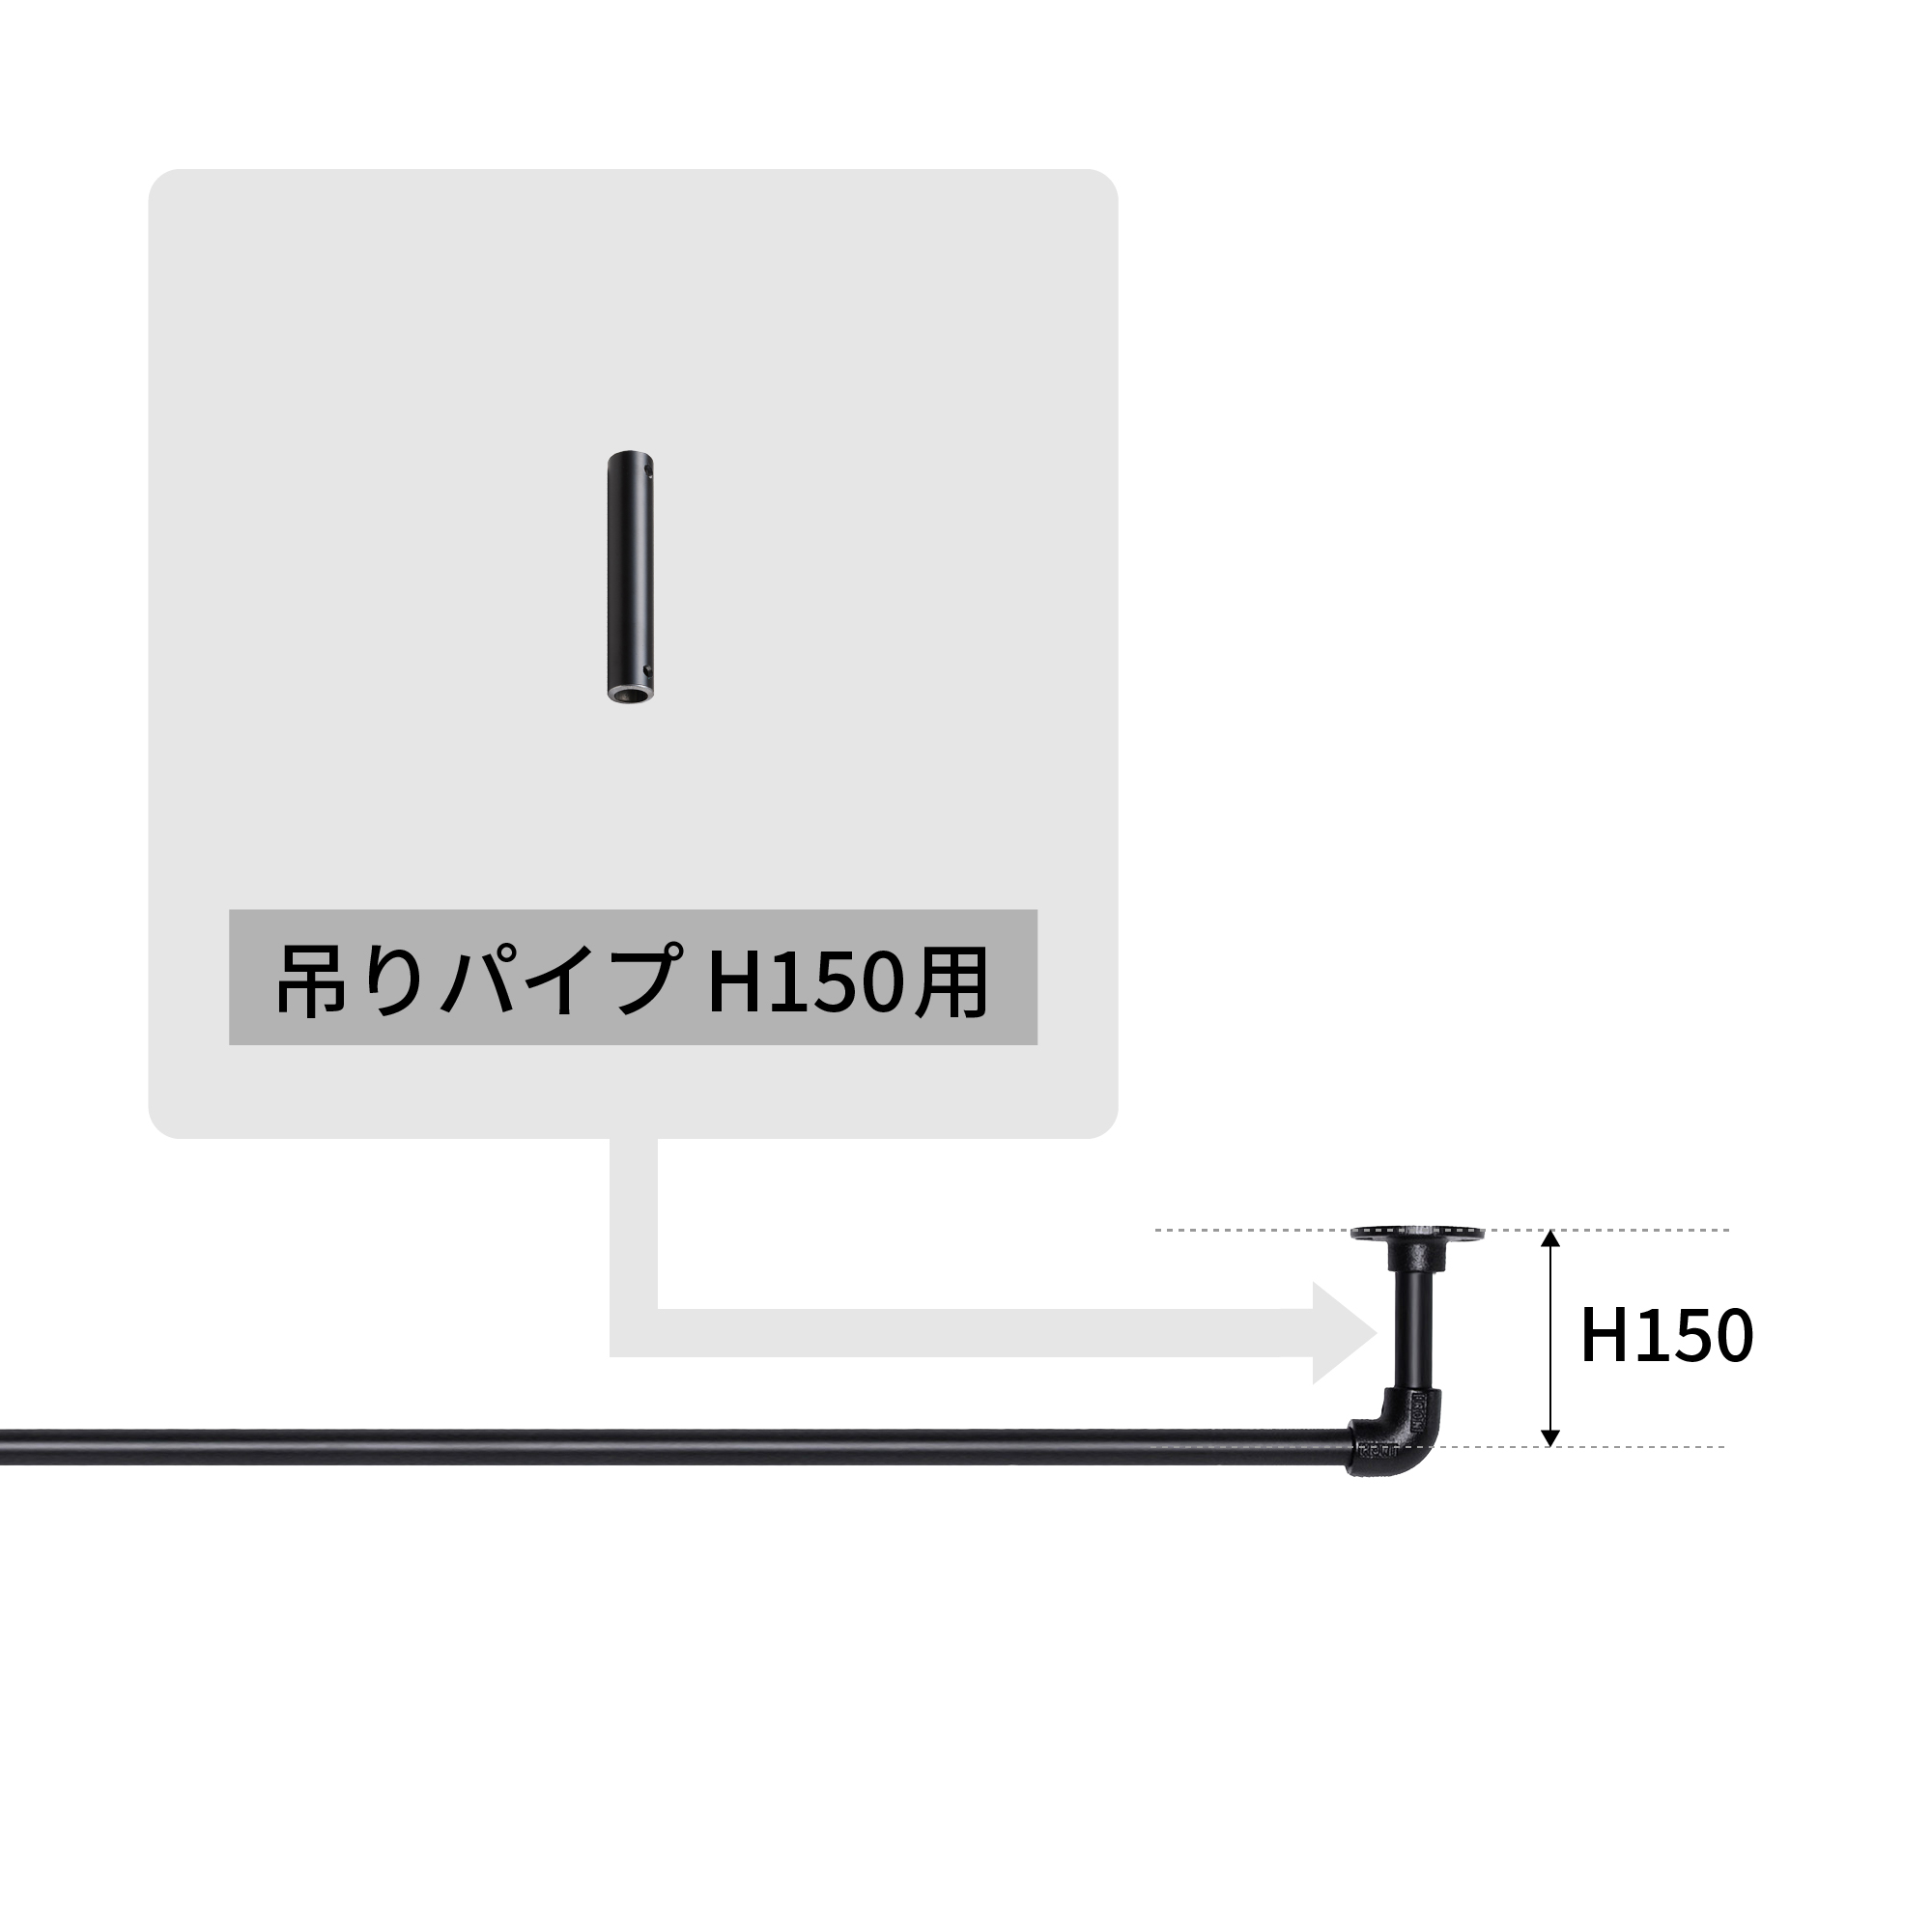 アイアンハンガーパイプ 吊りパイプ H150用 ブラック PS-HB008-41-G141